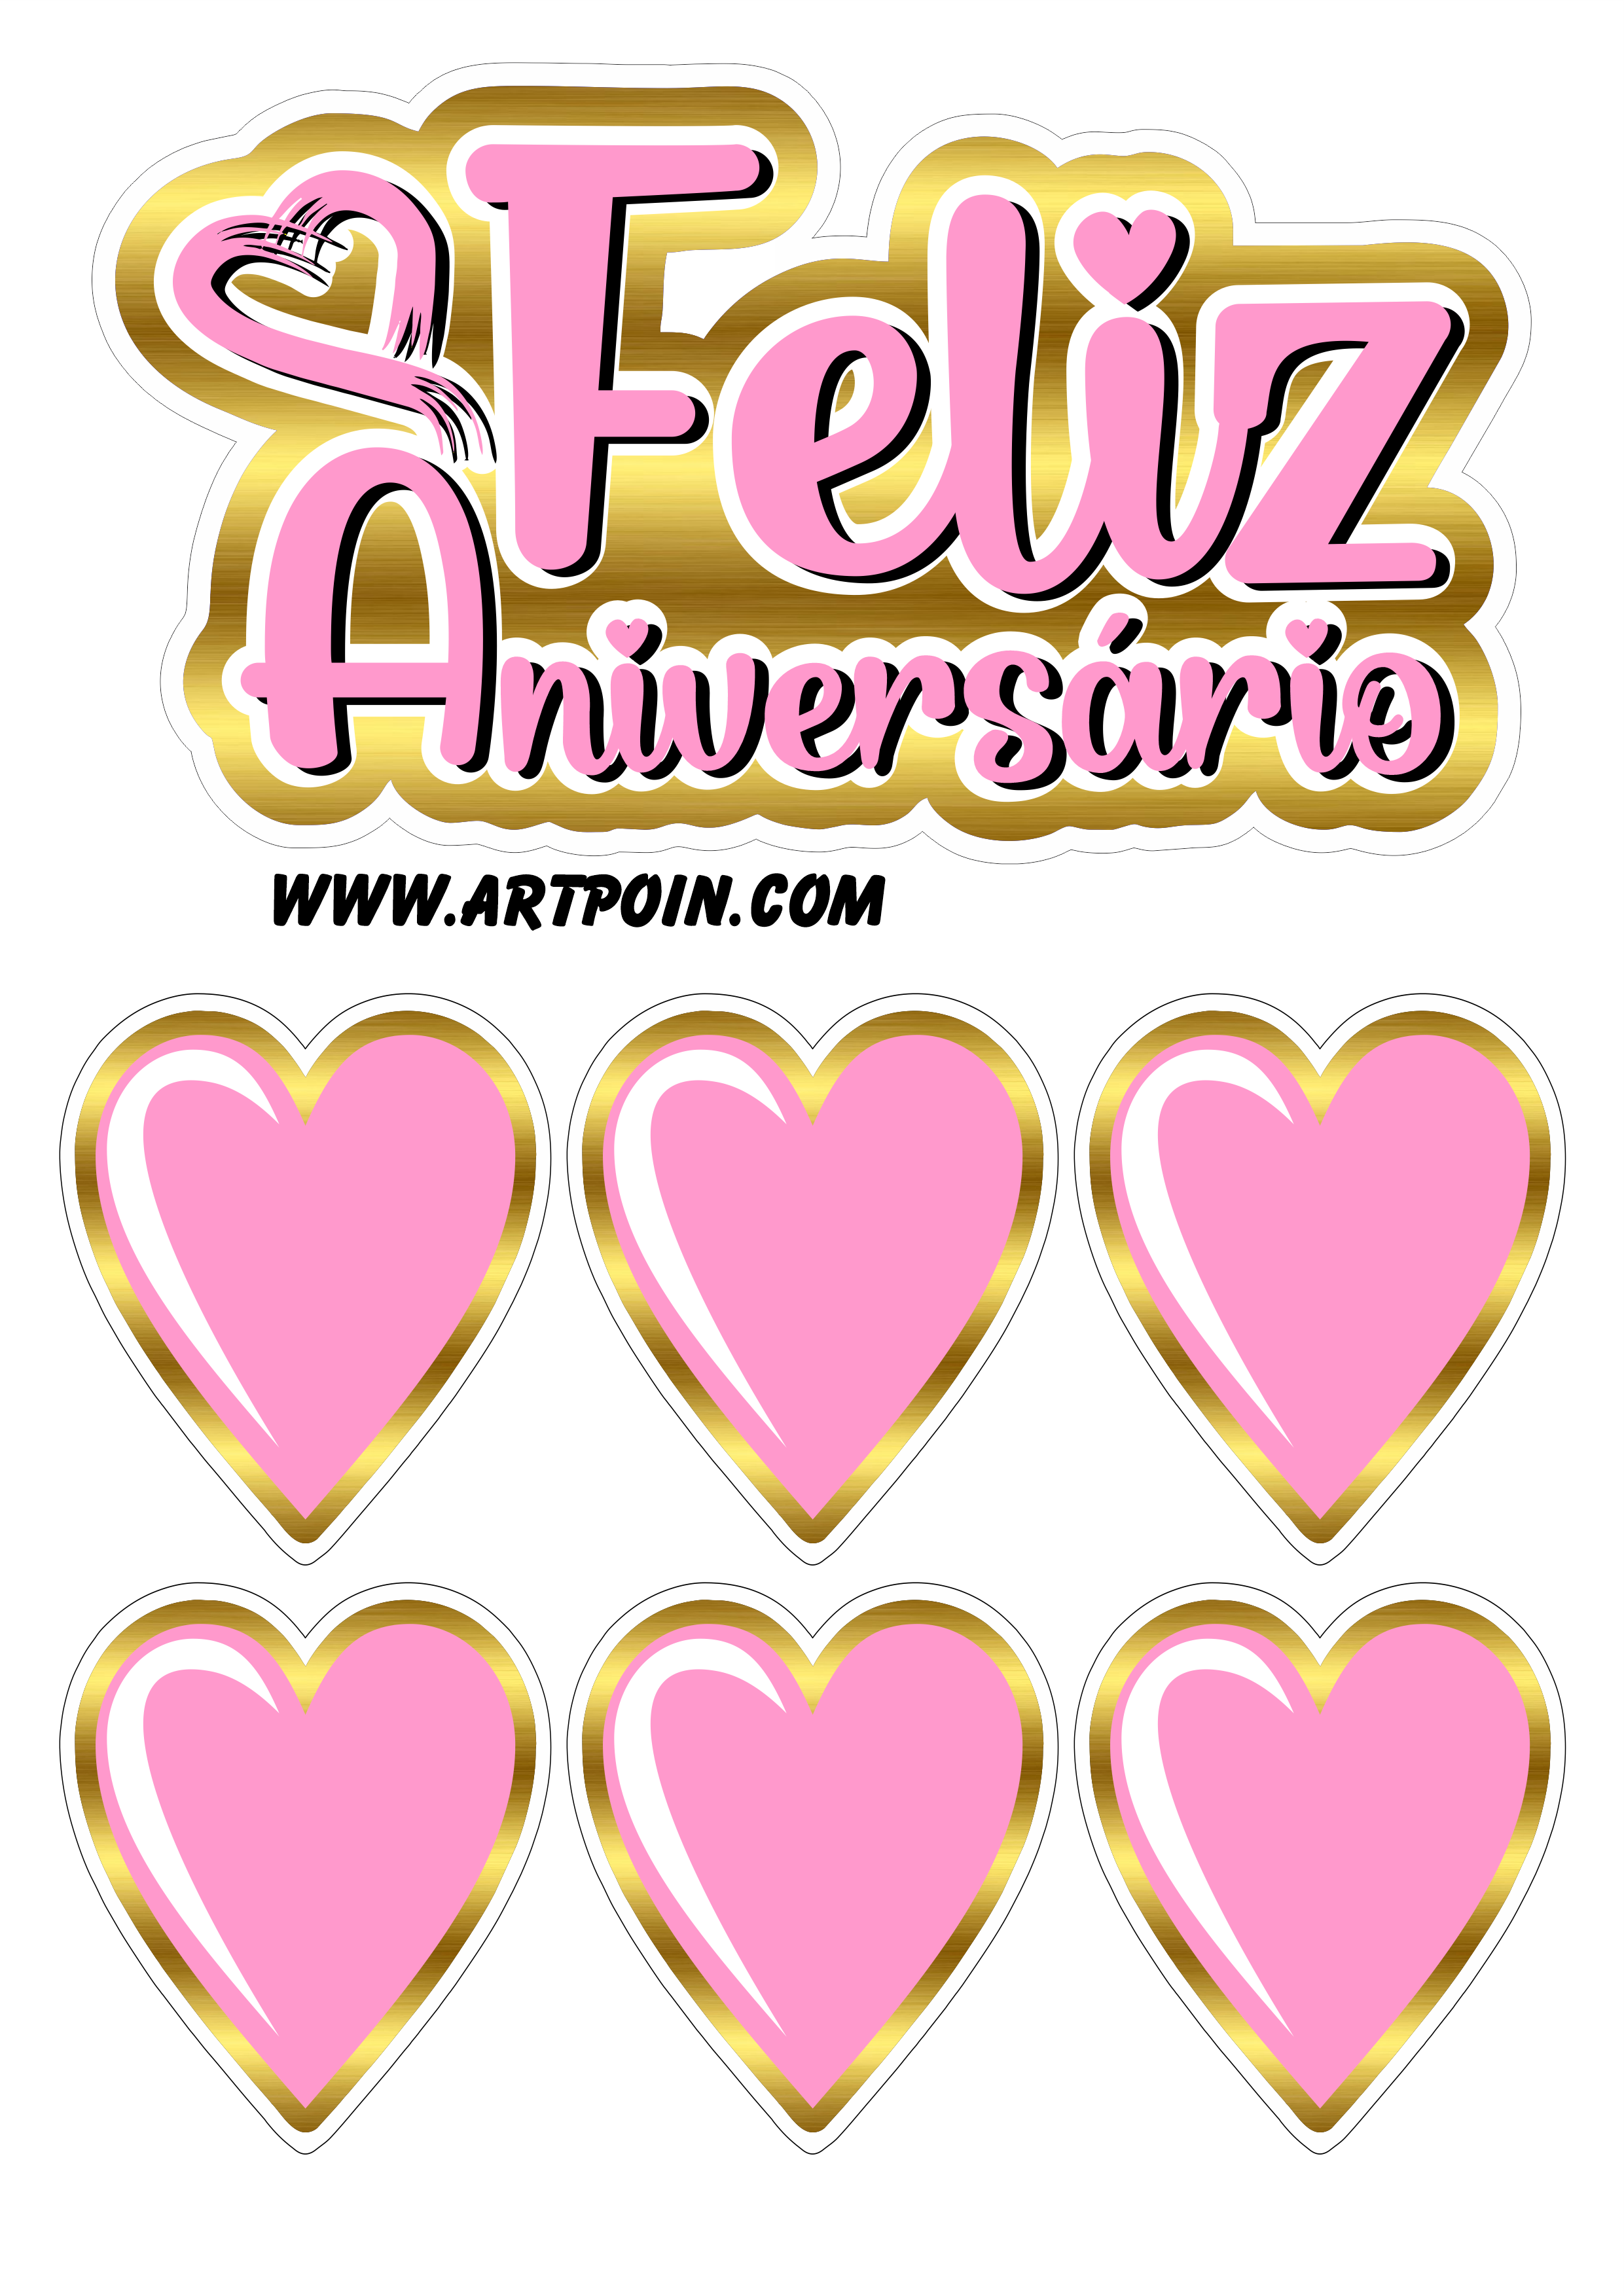 Topo de bolo dourado com rosa corações feliz aniversário renda extra com artigos de festa png